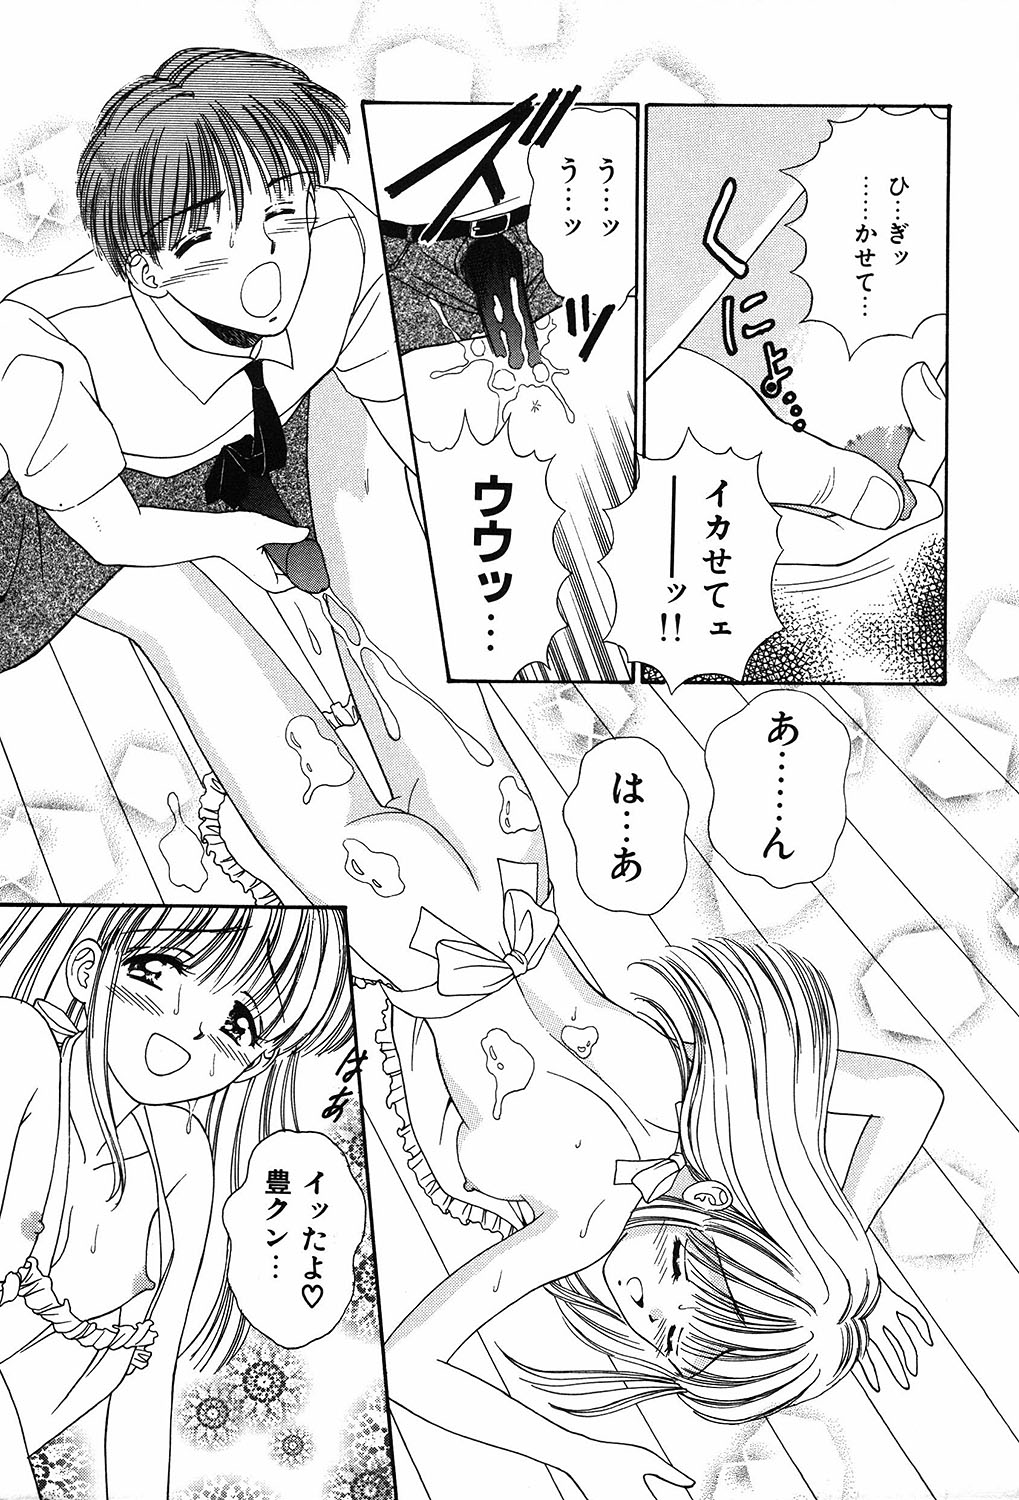 [Ayumi] Daisuki page 7 full